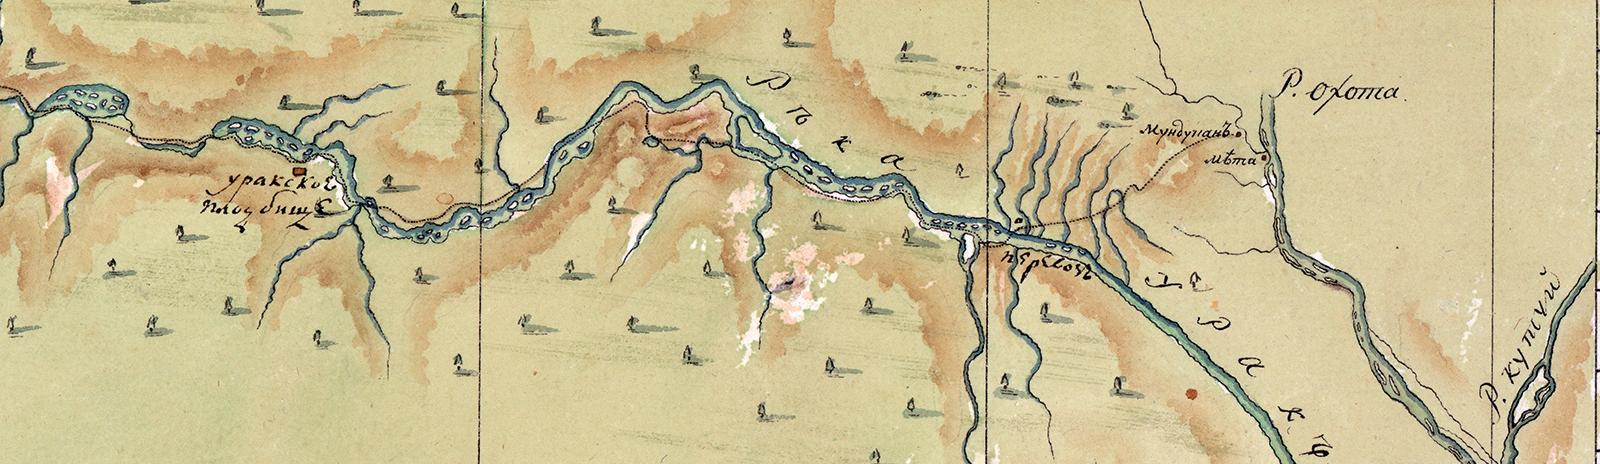 Фоновое изображение Меркаторская карта от 59 до 62 градусов северной широты, представляющая дорогу от города Якутска до города Охотска по рекам Мае и Юдоме